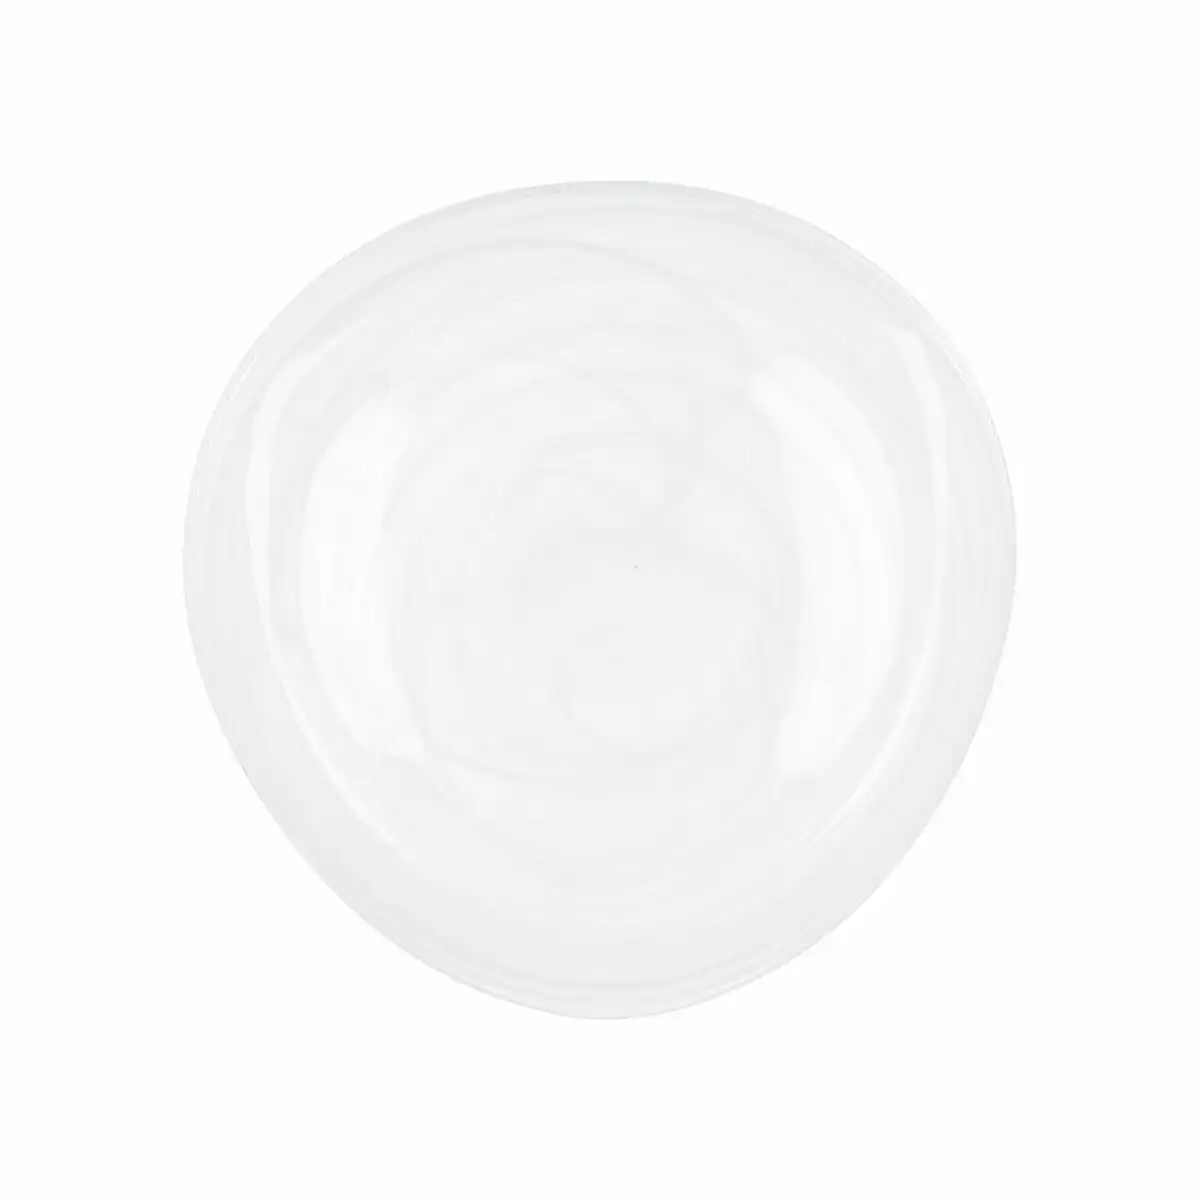 Assiette plate quid boreal blanc verre o 30 cm 6 unites pack 6x _1655. DIAYTAR SENEGAL - Où la Tradition s'Harmonise avec le Moderne. Parcourez notre gamme diversifiée et choisissez des produits qui révèlent l'âme du Sénégal.